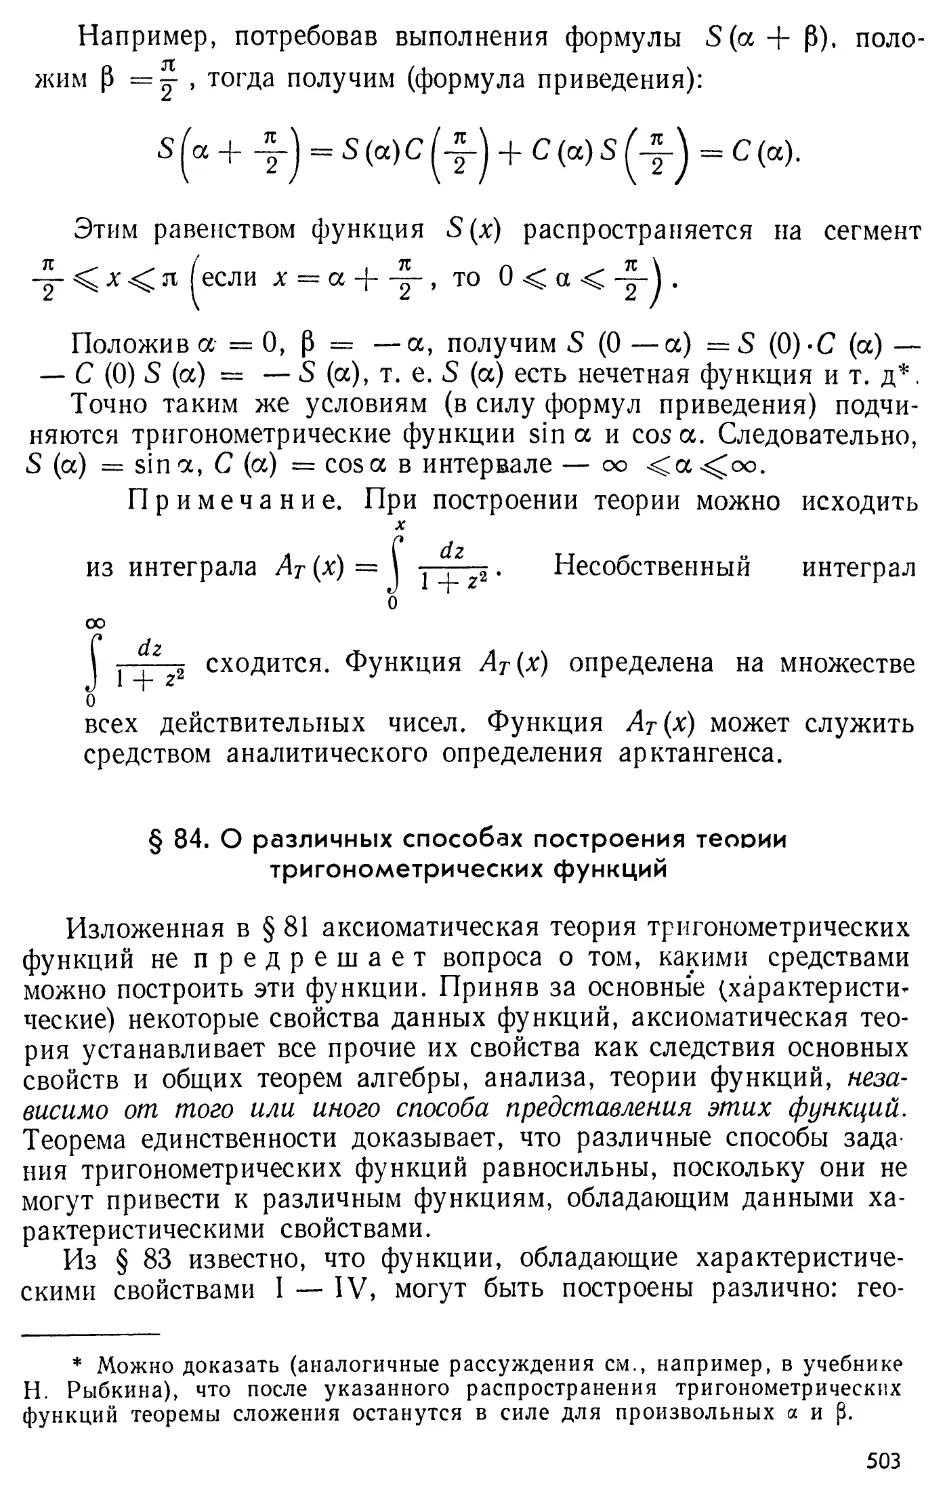 § 84. О различных способах построения теории тригонометрических функций